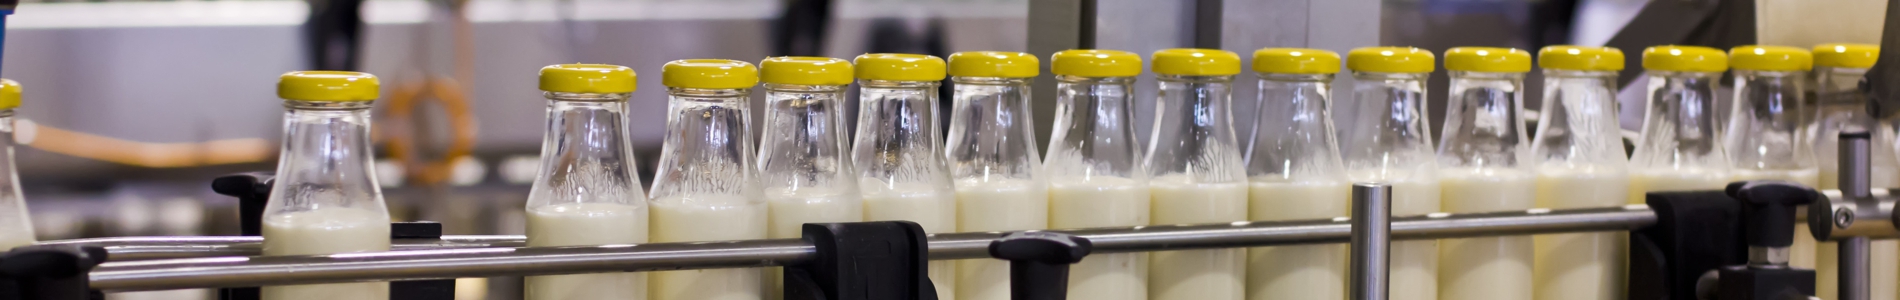 Milchverarbeitende Industrie / Dairy Industry